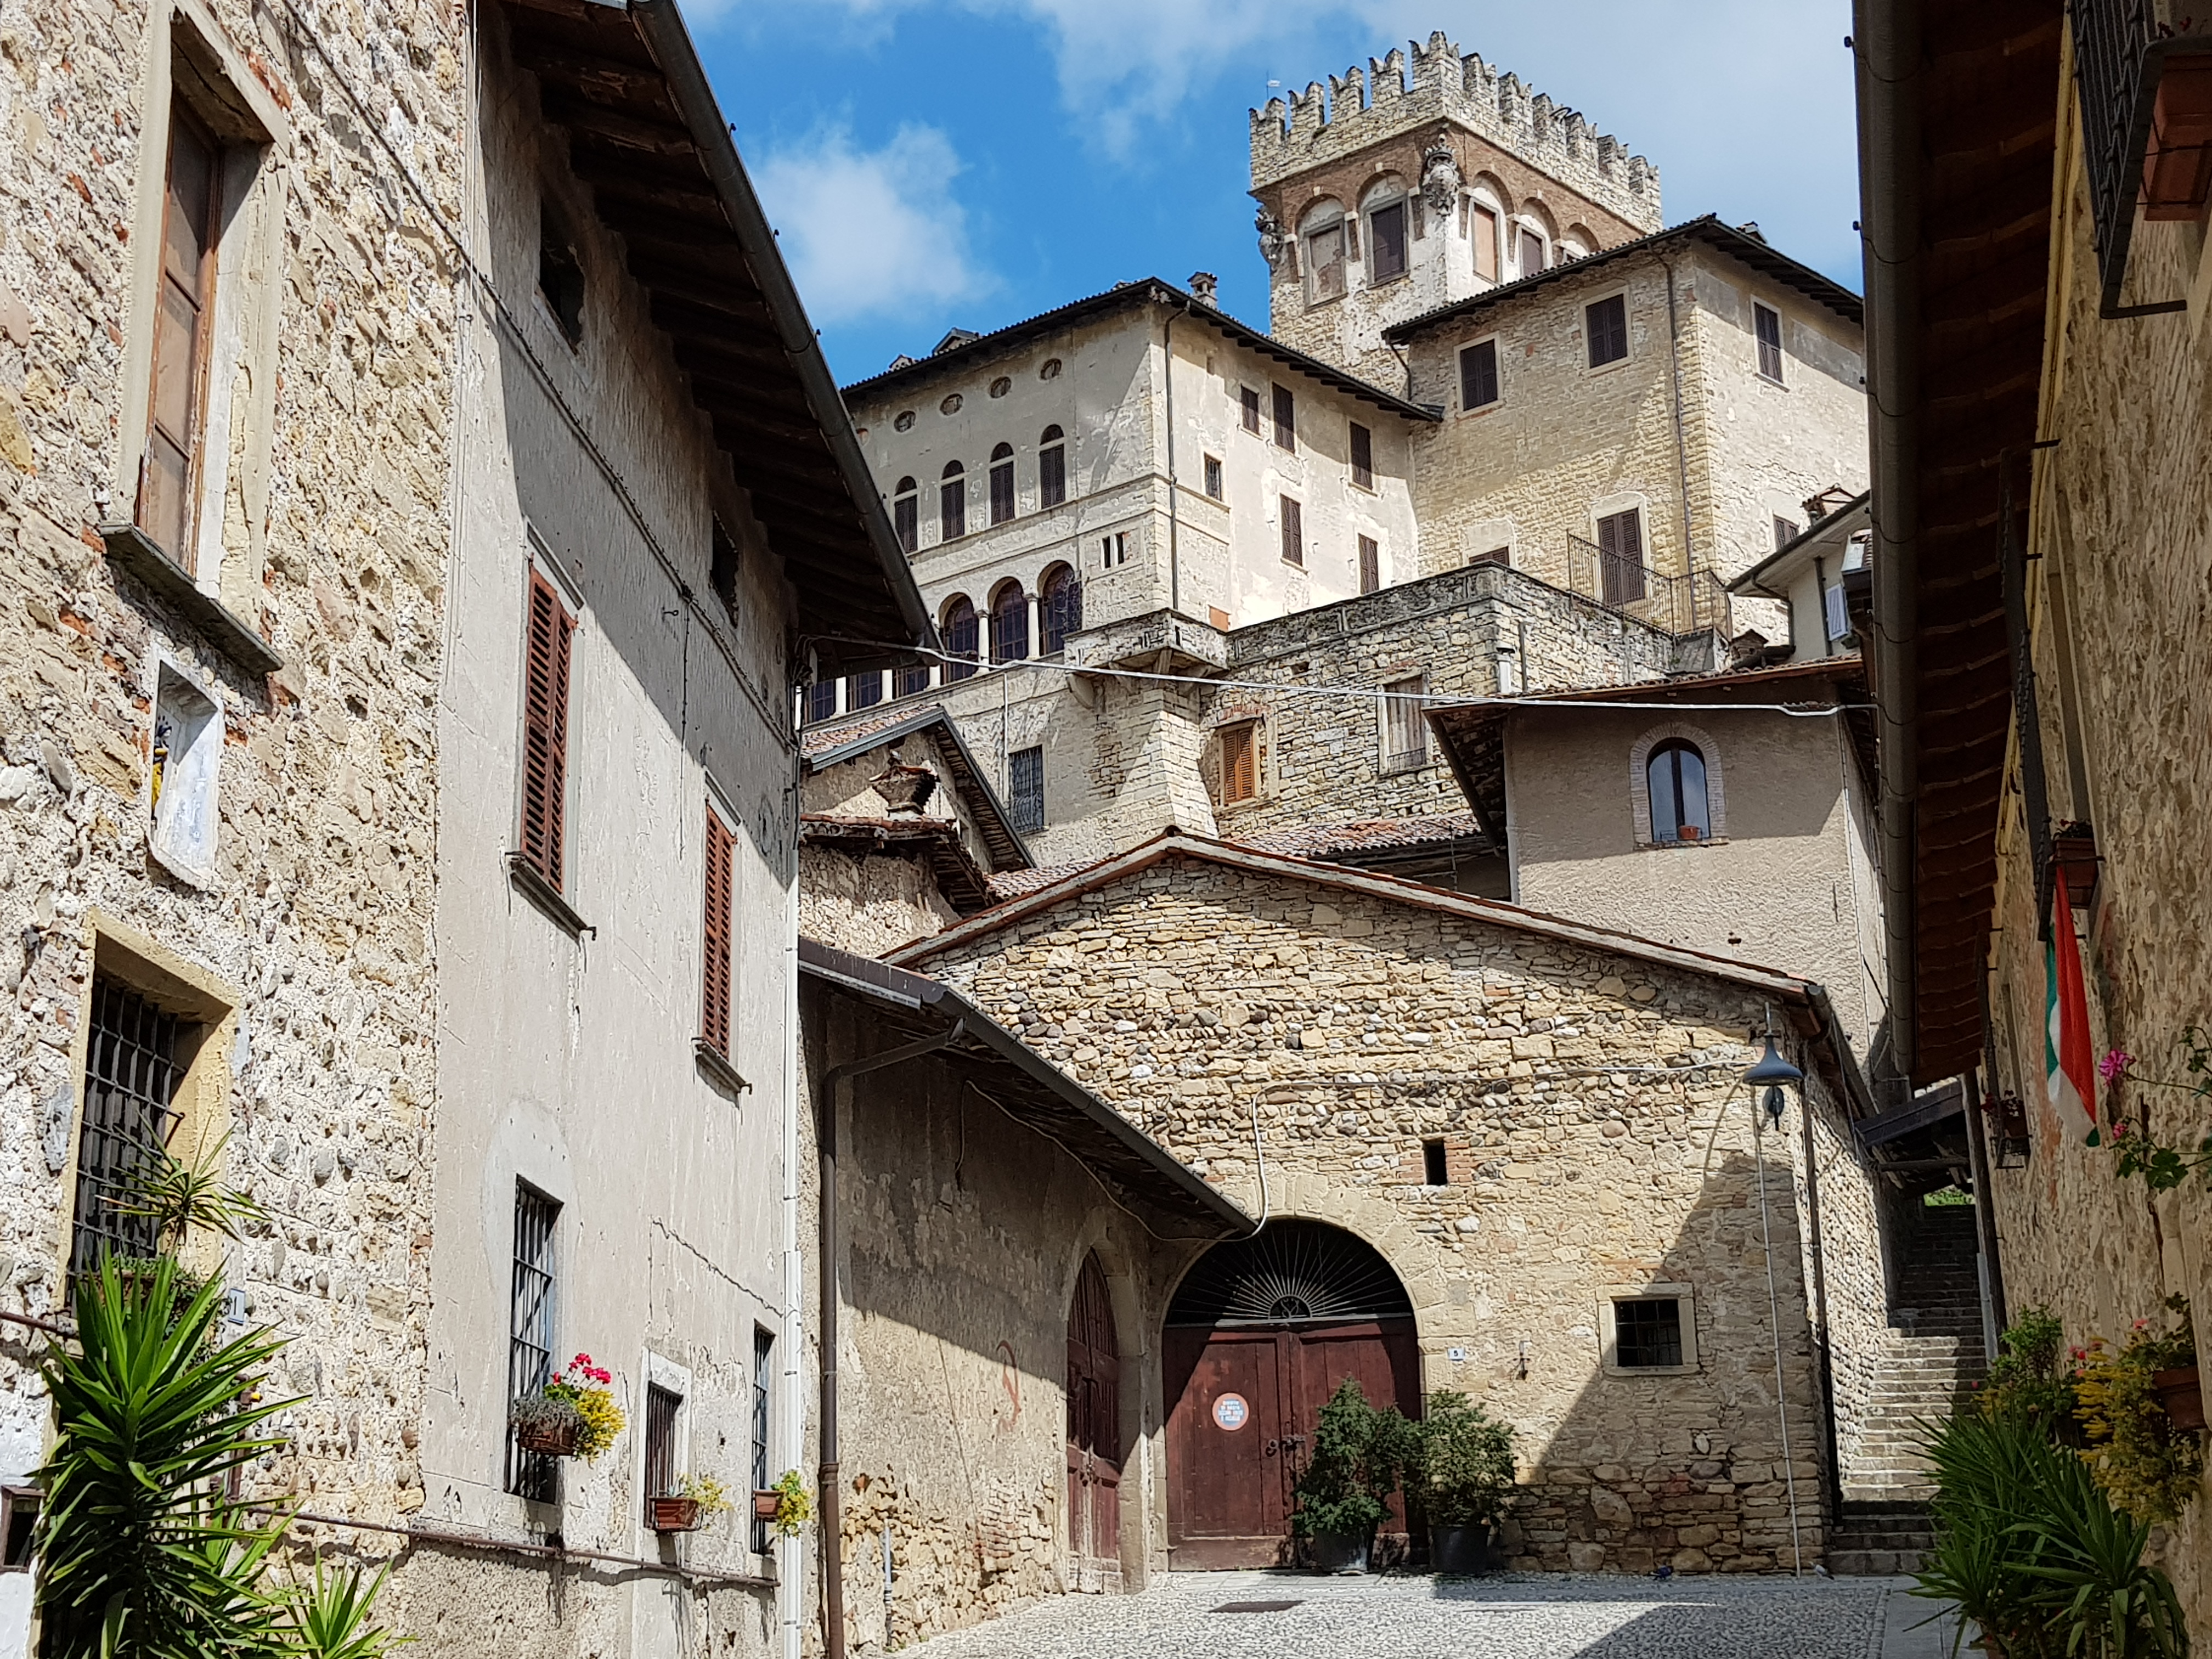 Visite guidate al Castello Camozzi Vertova in collaborazione con Terre del Vescovado e la guida turistica Tosca Rossi di Terre di Bergamo.